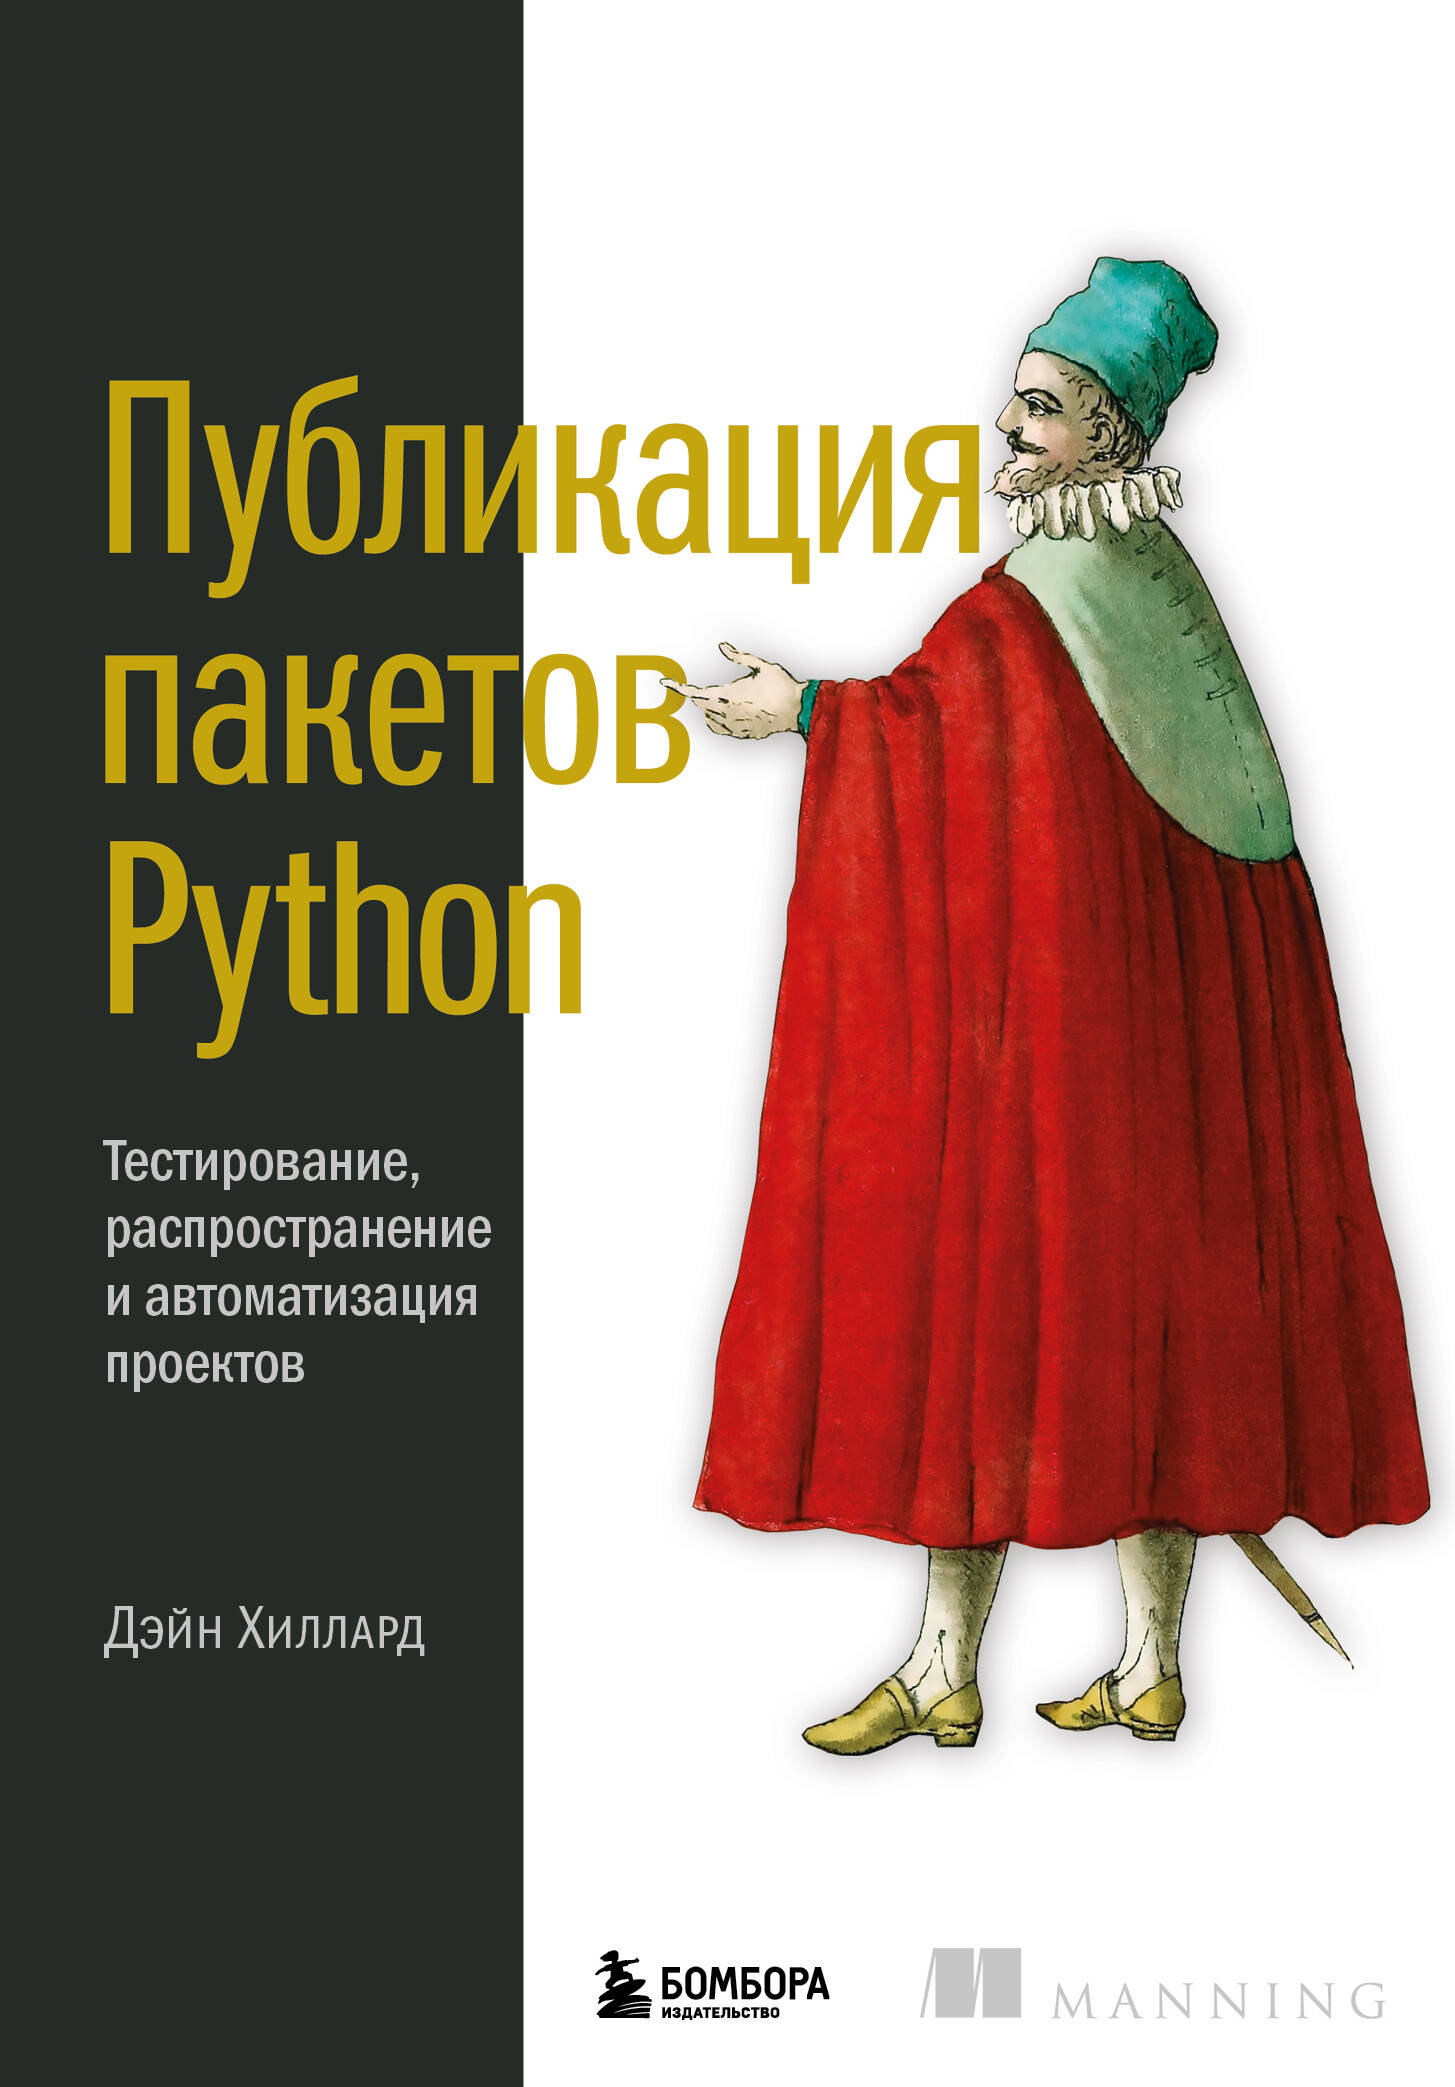 python лучшие практики и инструменты Хиллард Д. Публикация пакетов Python. Тестирование, распространение и автоматизация проектов